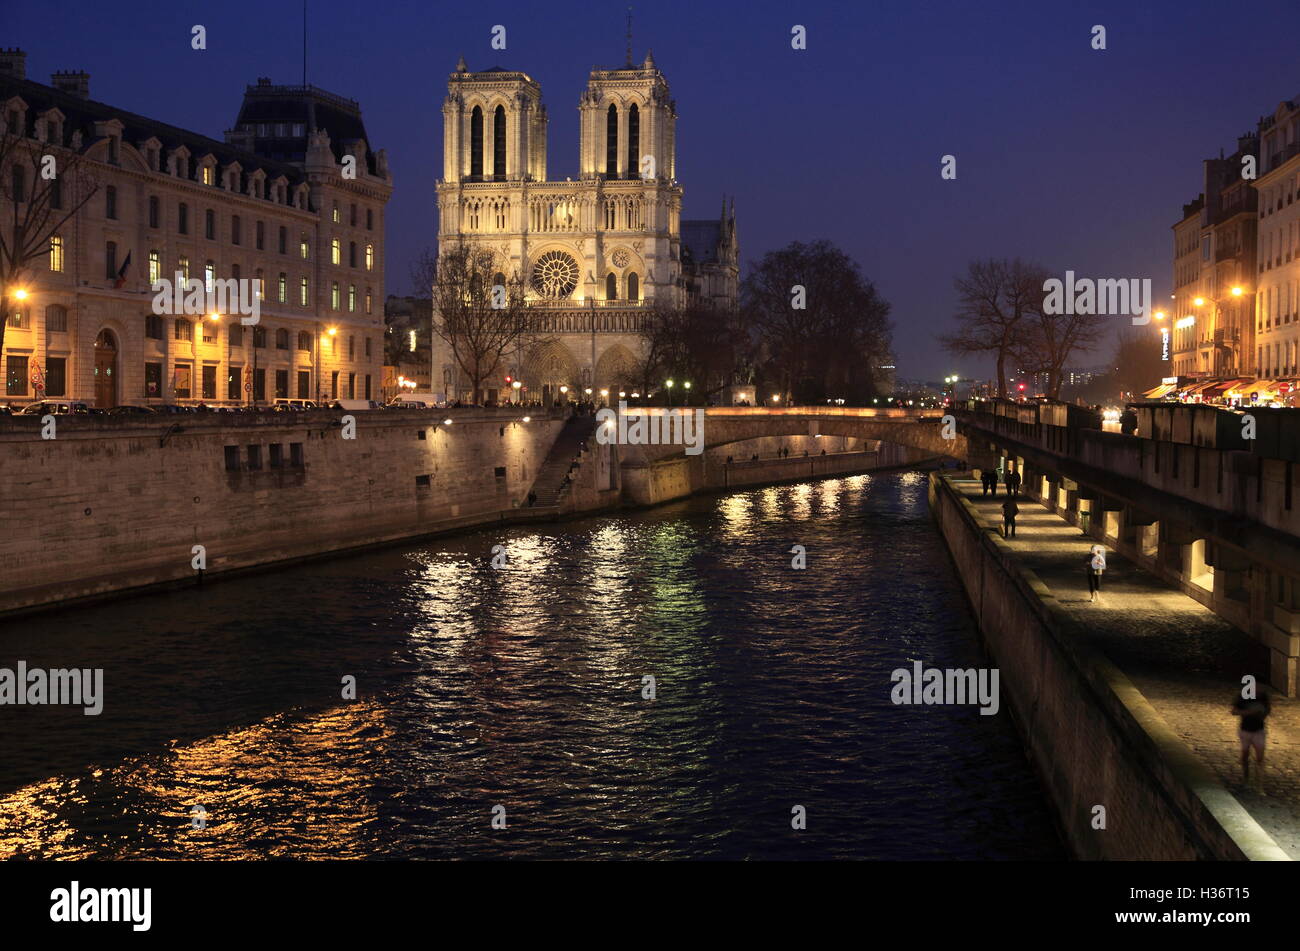 La vue nocturne de la Cathédrale Notre Dame avec Seine en premier plan. Paris. France Banque D'Images